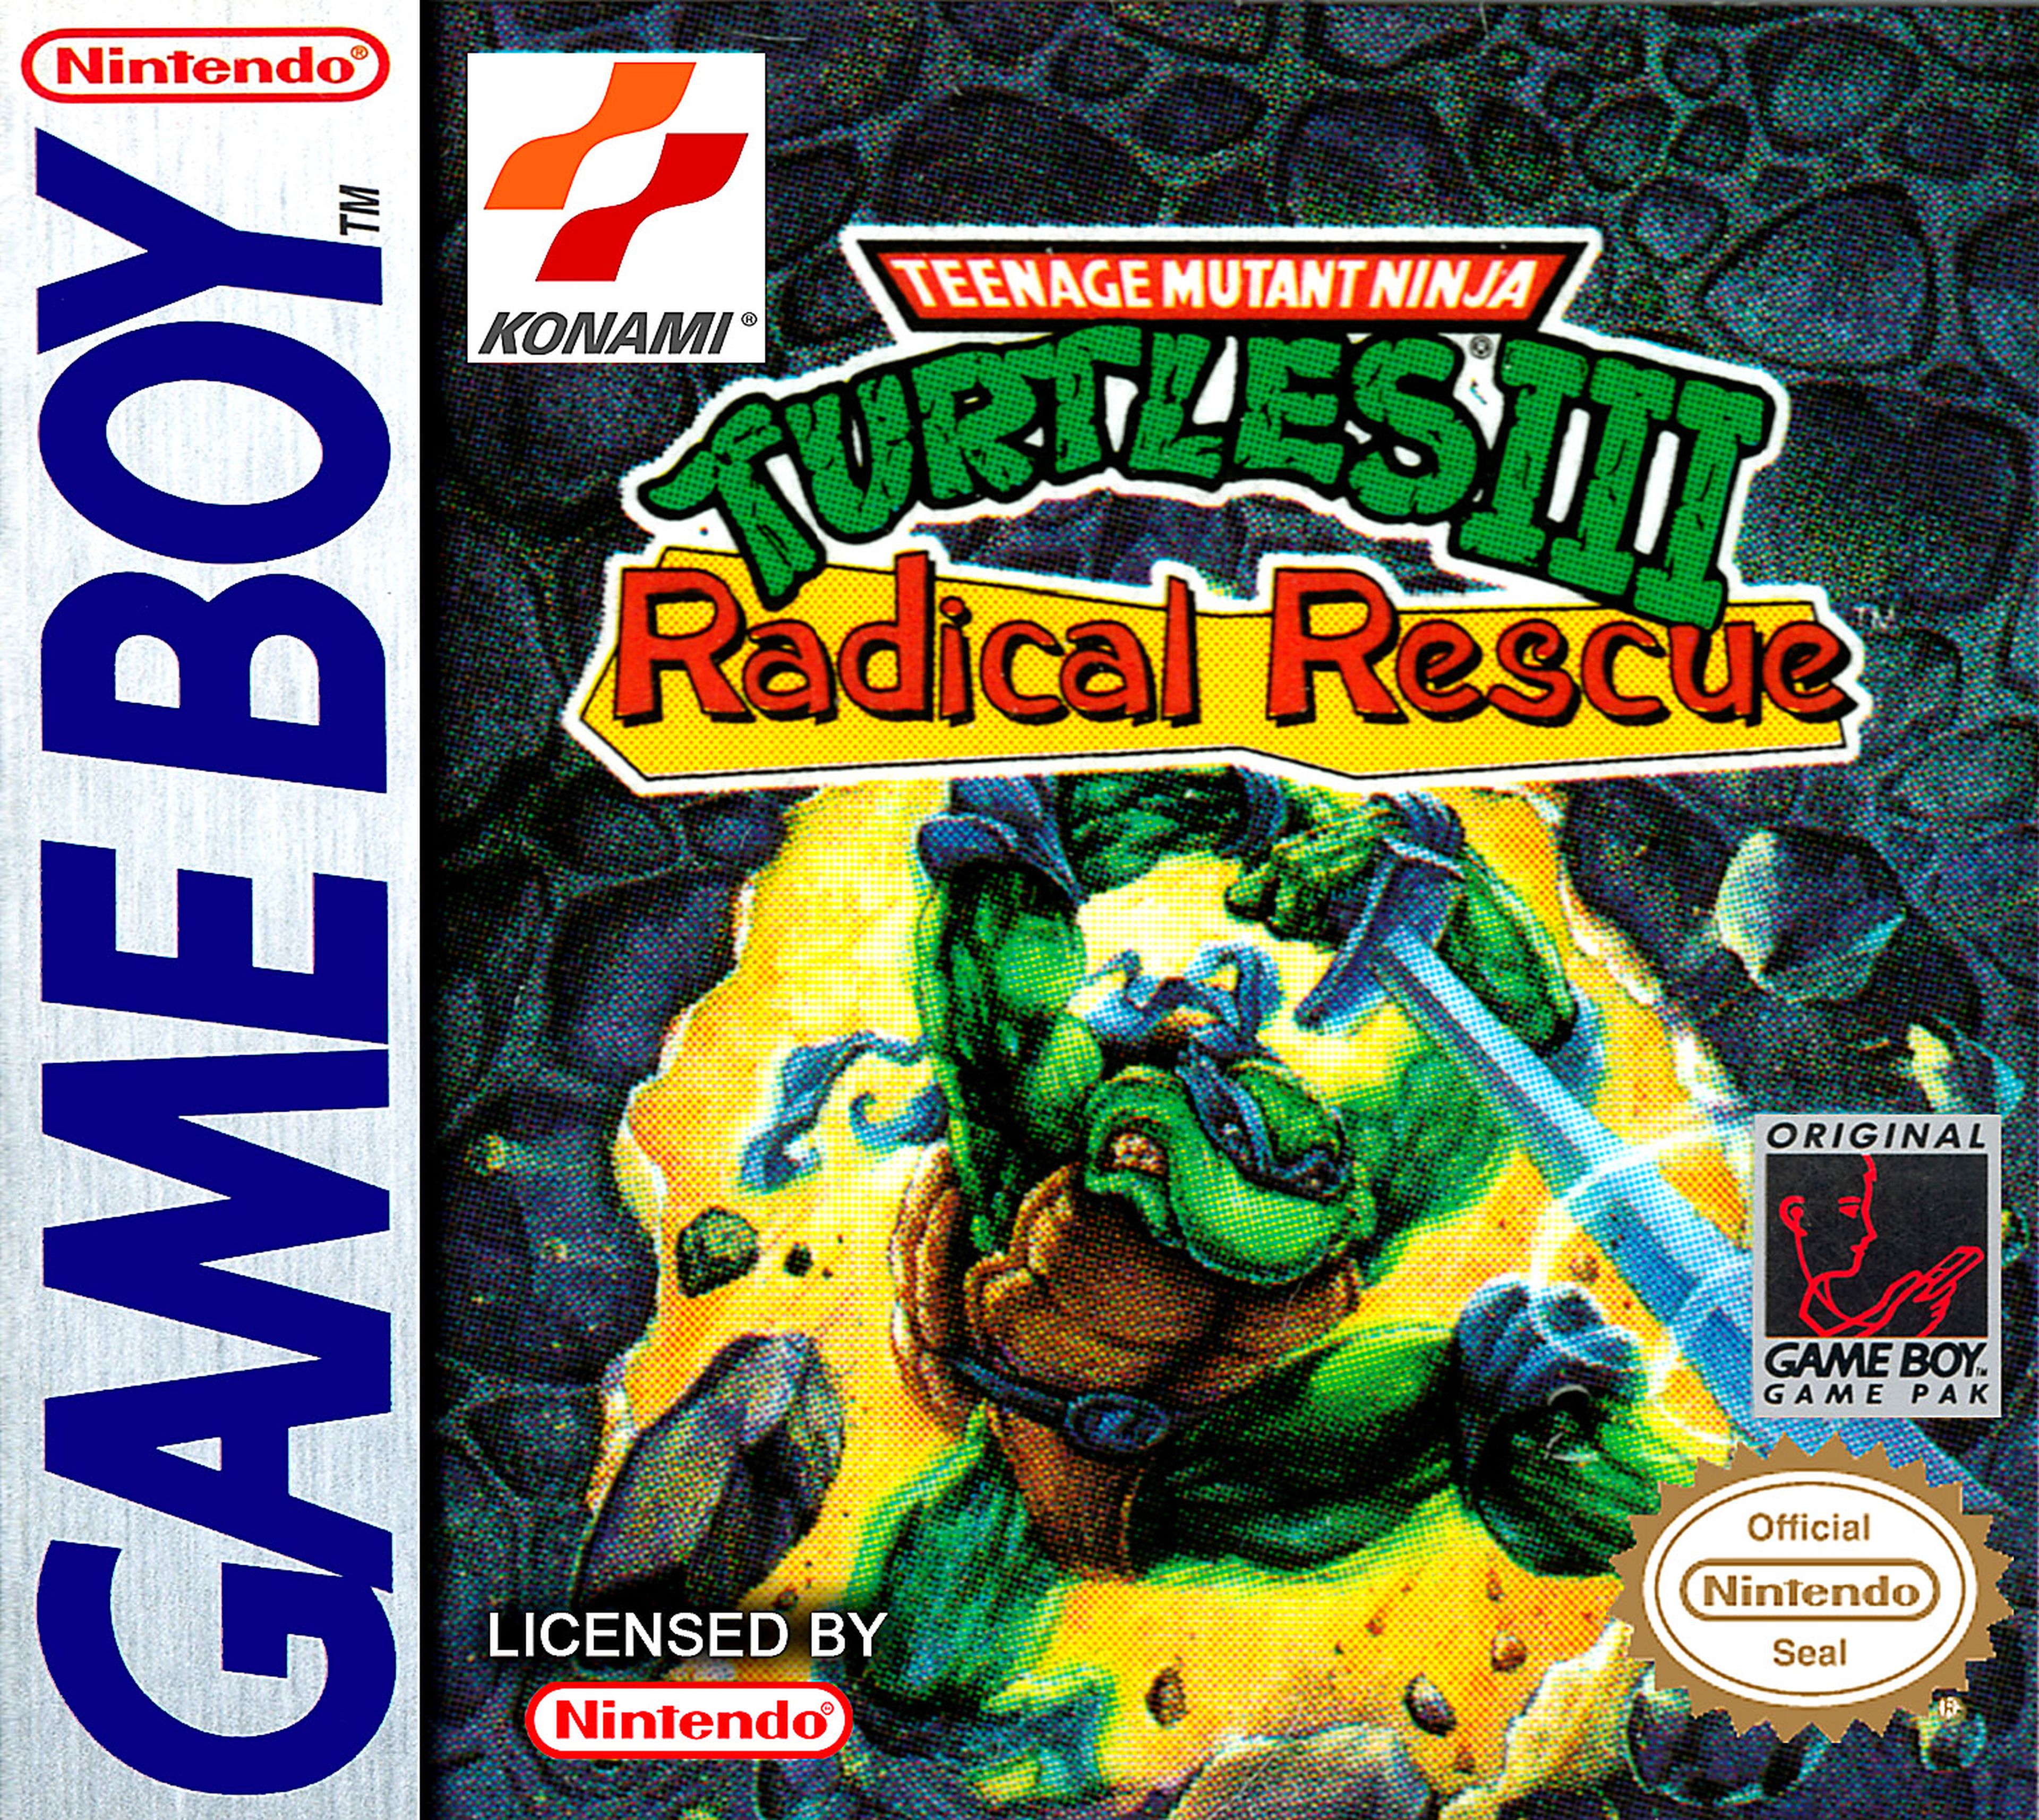 Teenage Mutant Ninja Turtles III Radical Rescue